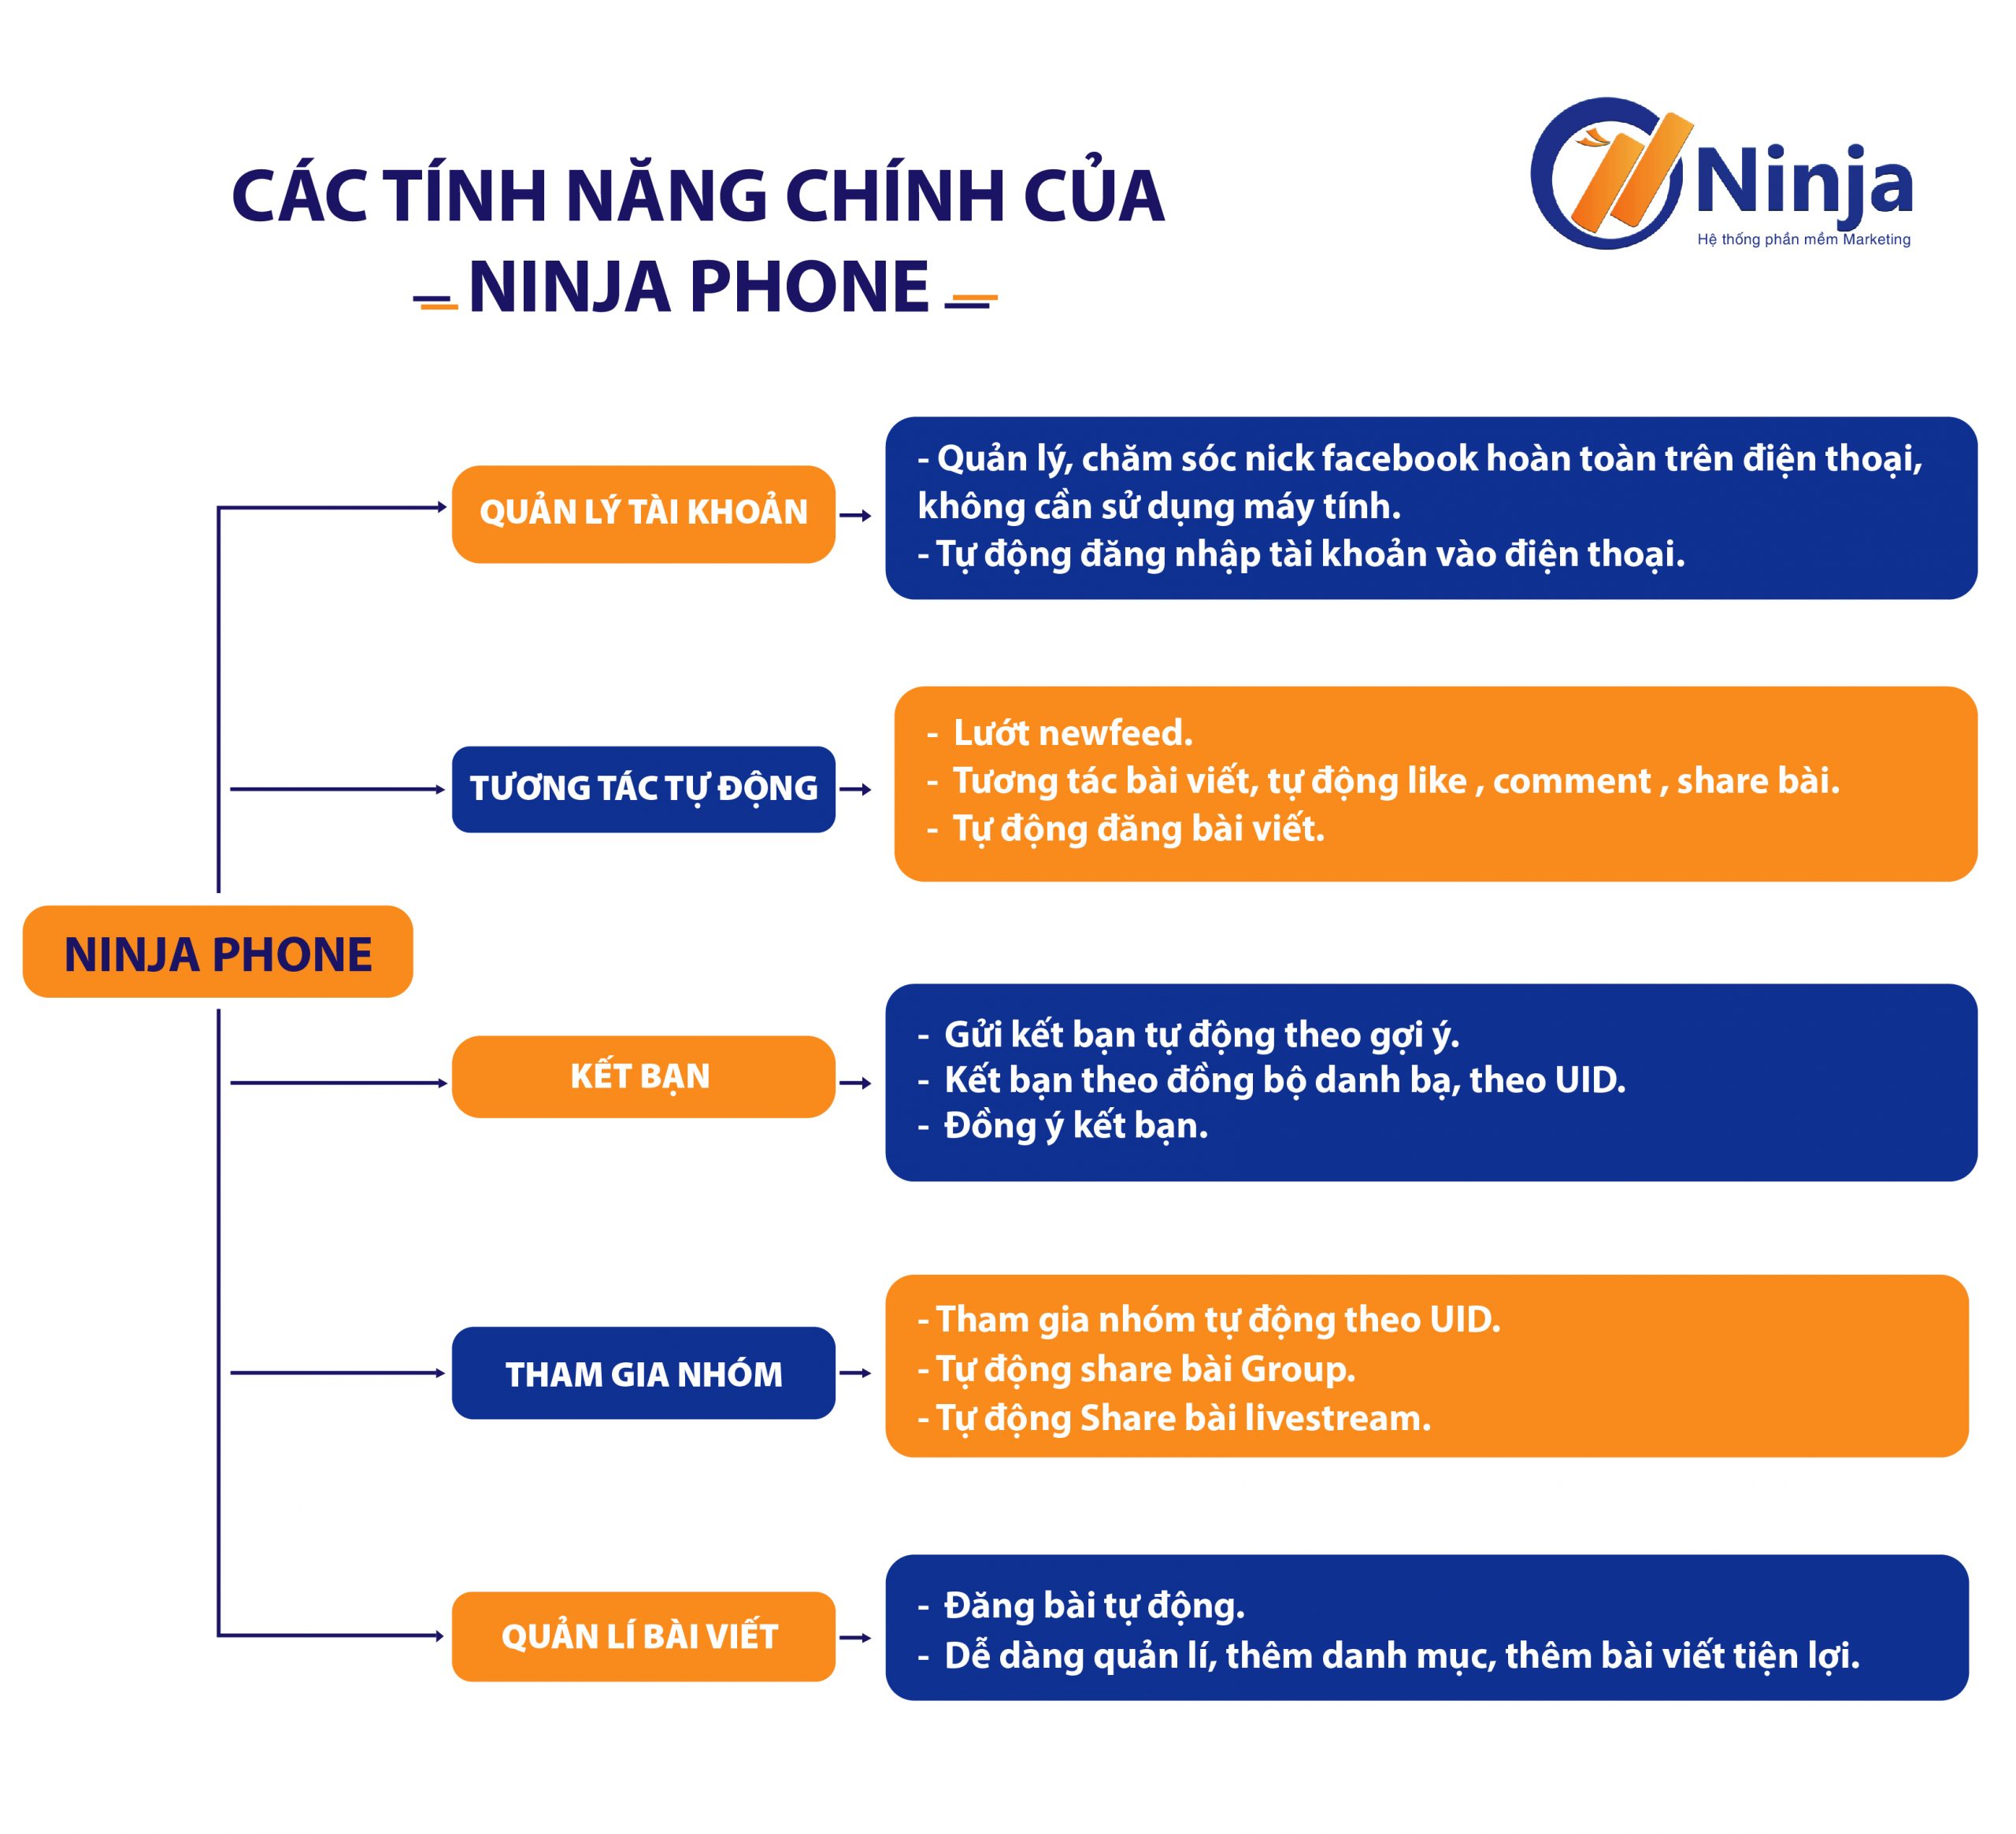 ninja-phone-phan-mem-nuoi-nick-dien-thoai-thong-minh-tien-loi